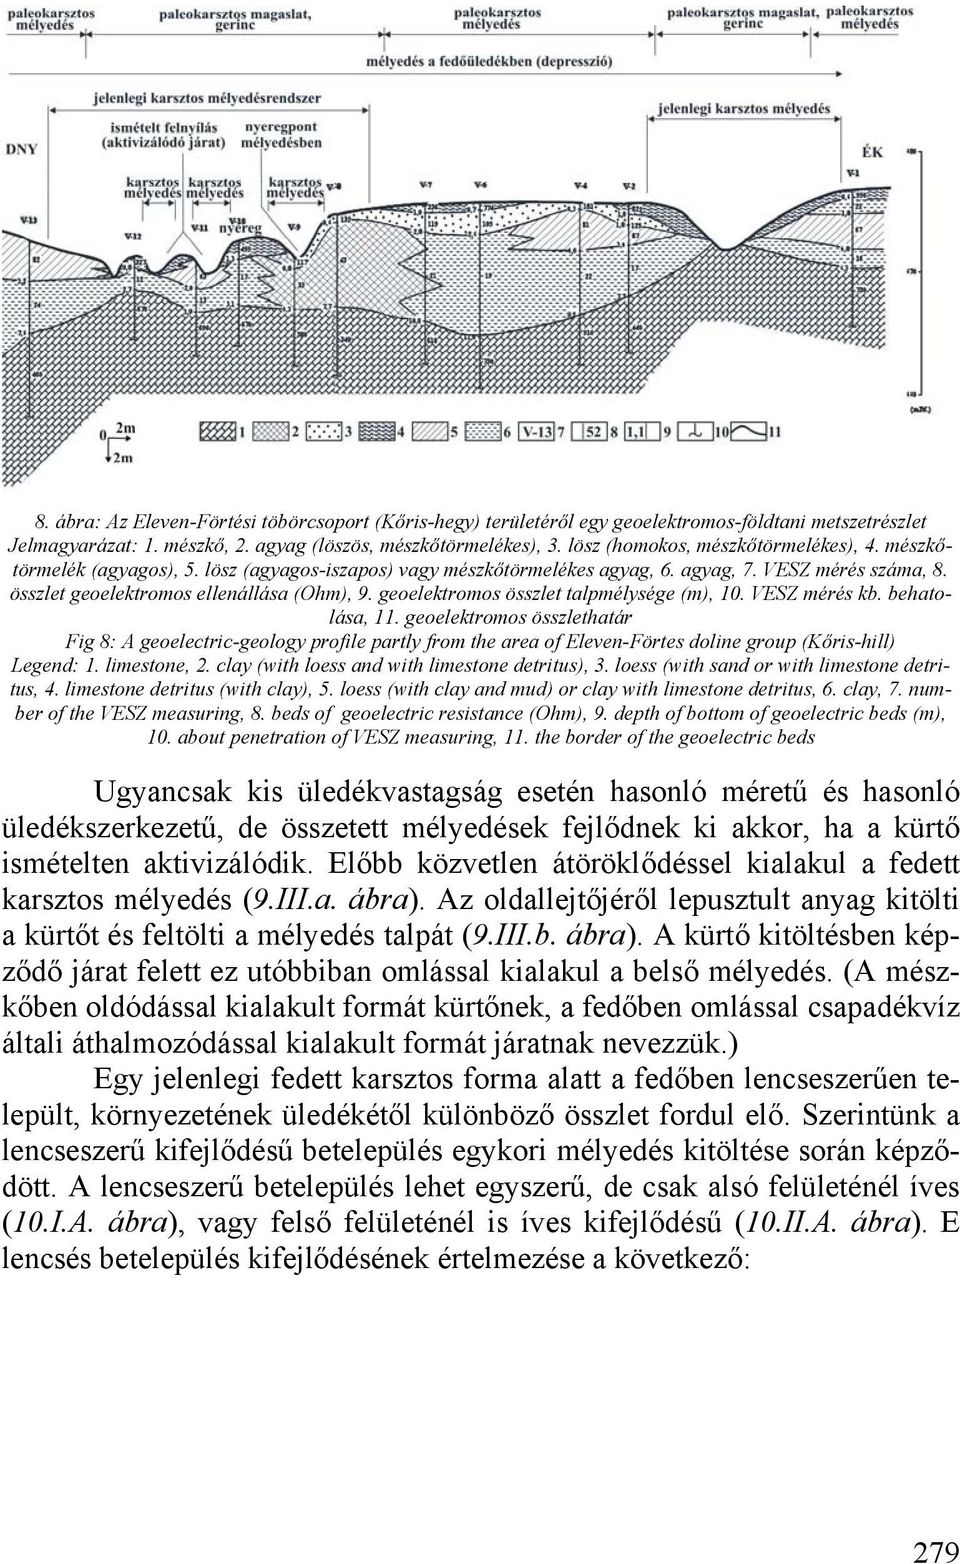 geoelektromos összlet talpmélysége (m), 10. VESZ mérés kb. behatolása, 11.